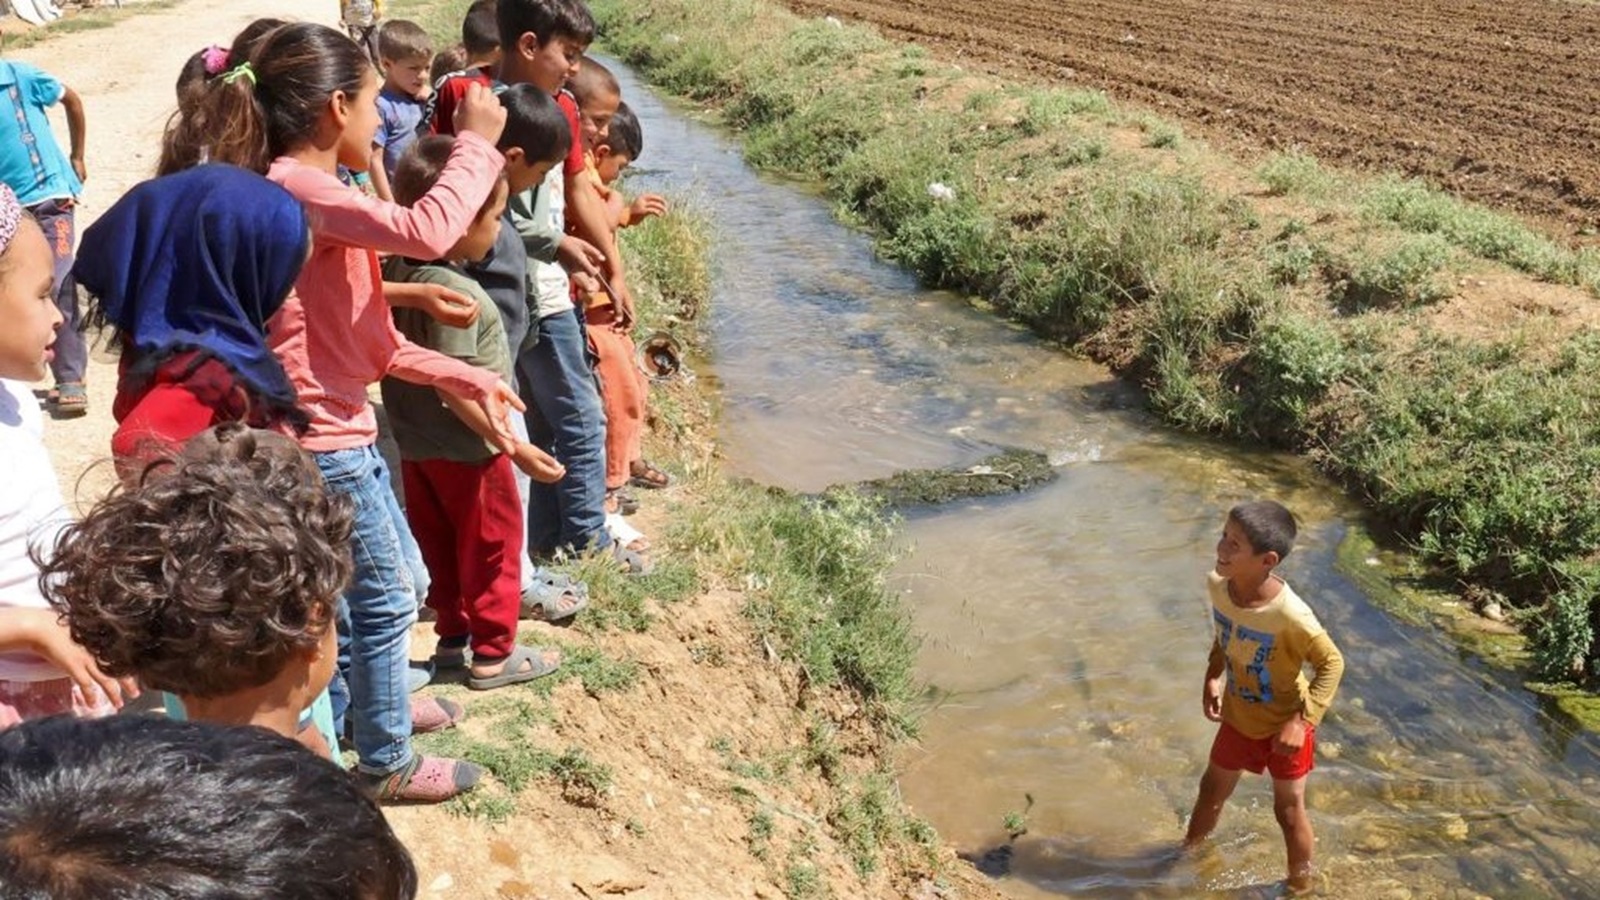 إخبار للنيابة العامة البيئية: "اللاجئون أغرقوا البقاع بالصرف الصحي"!